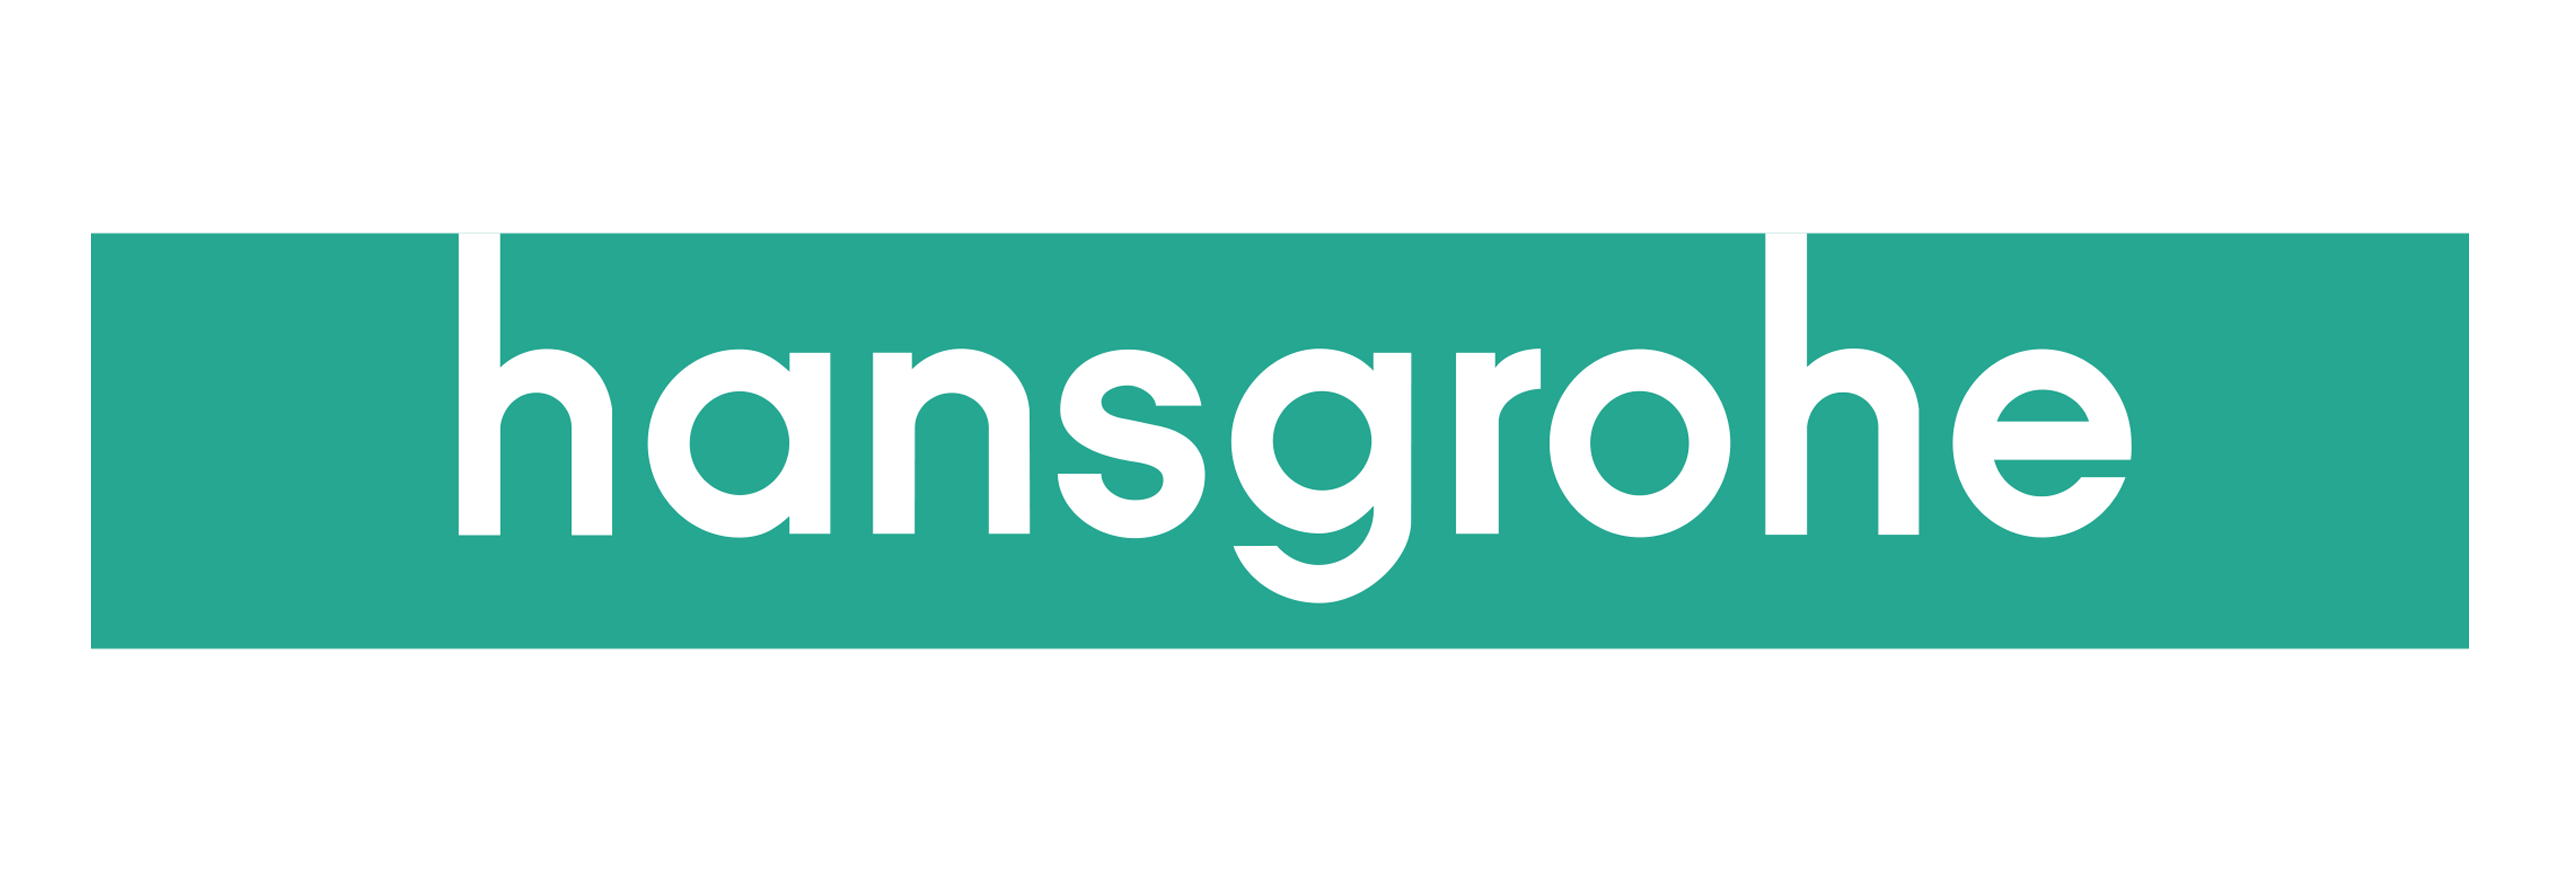 hansegrohe-logo